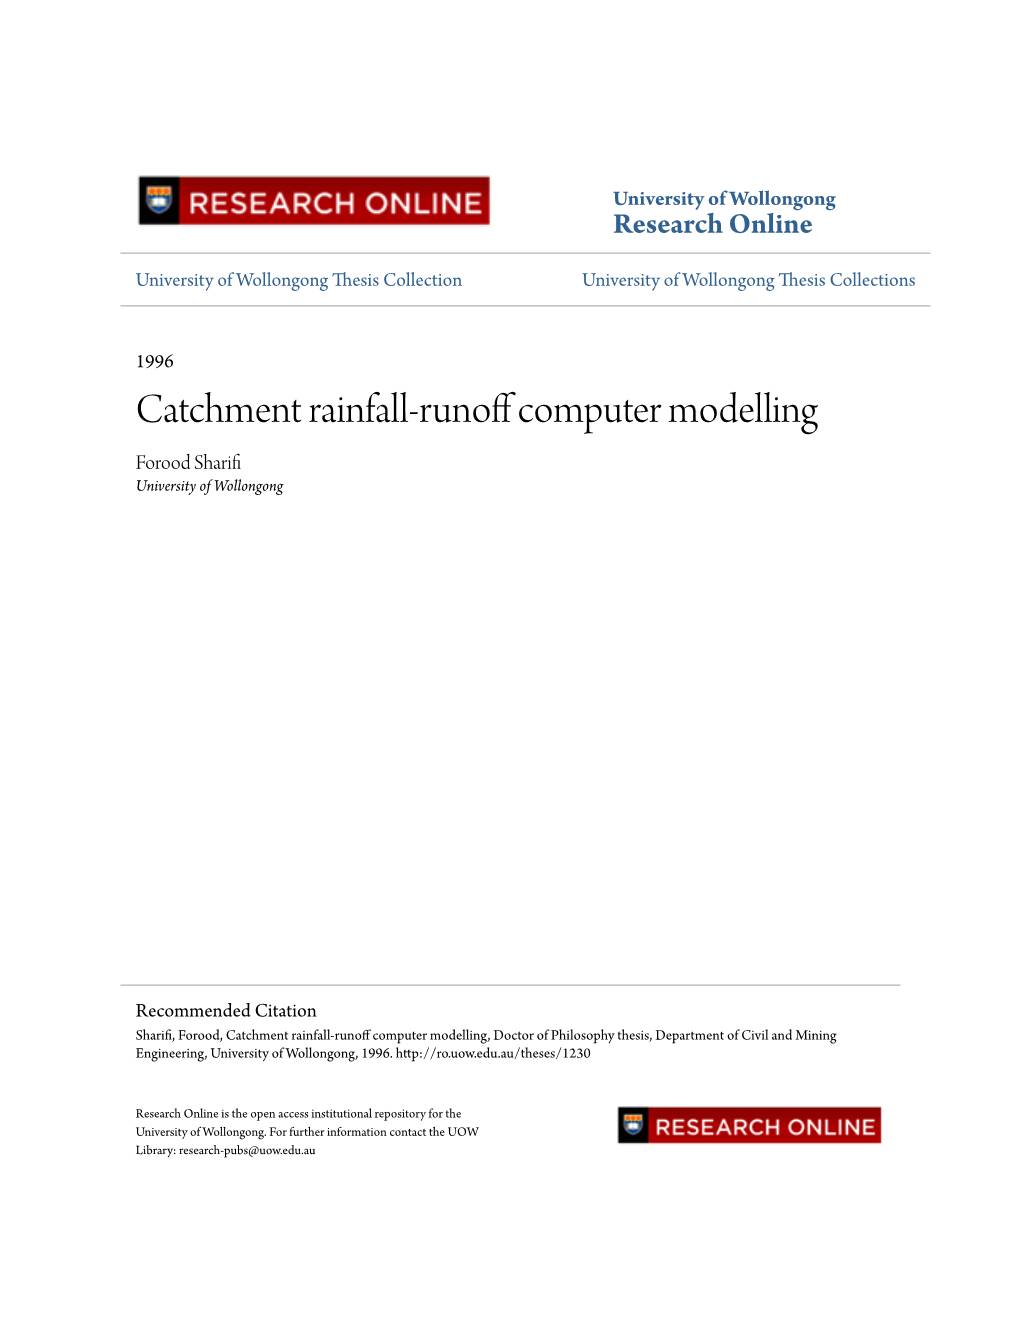 Catchment Rainfall-Runoff Computer Modelling Forood Sharifi University of Wollongong